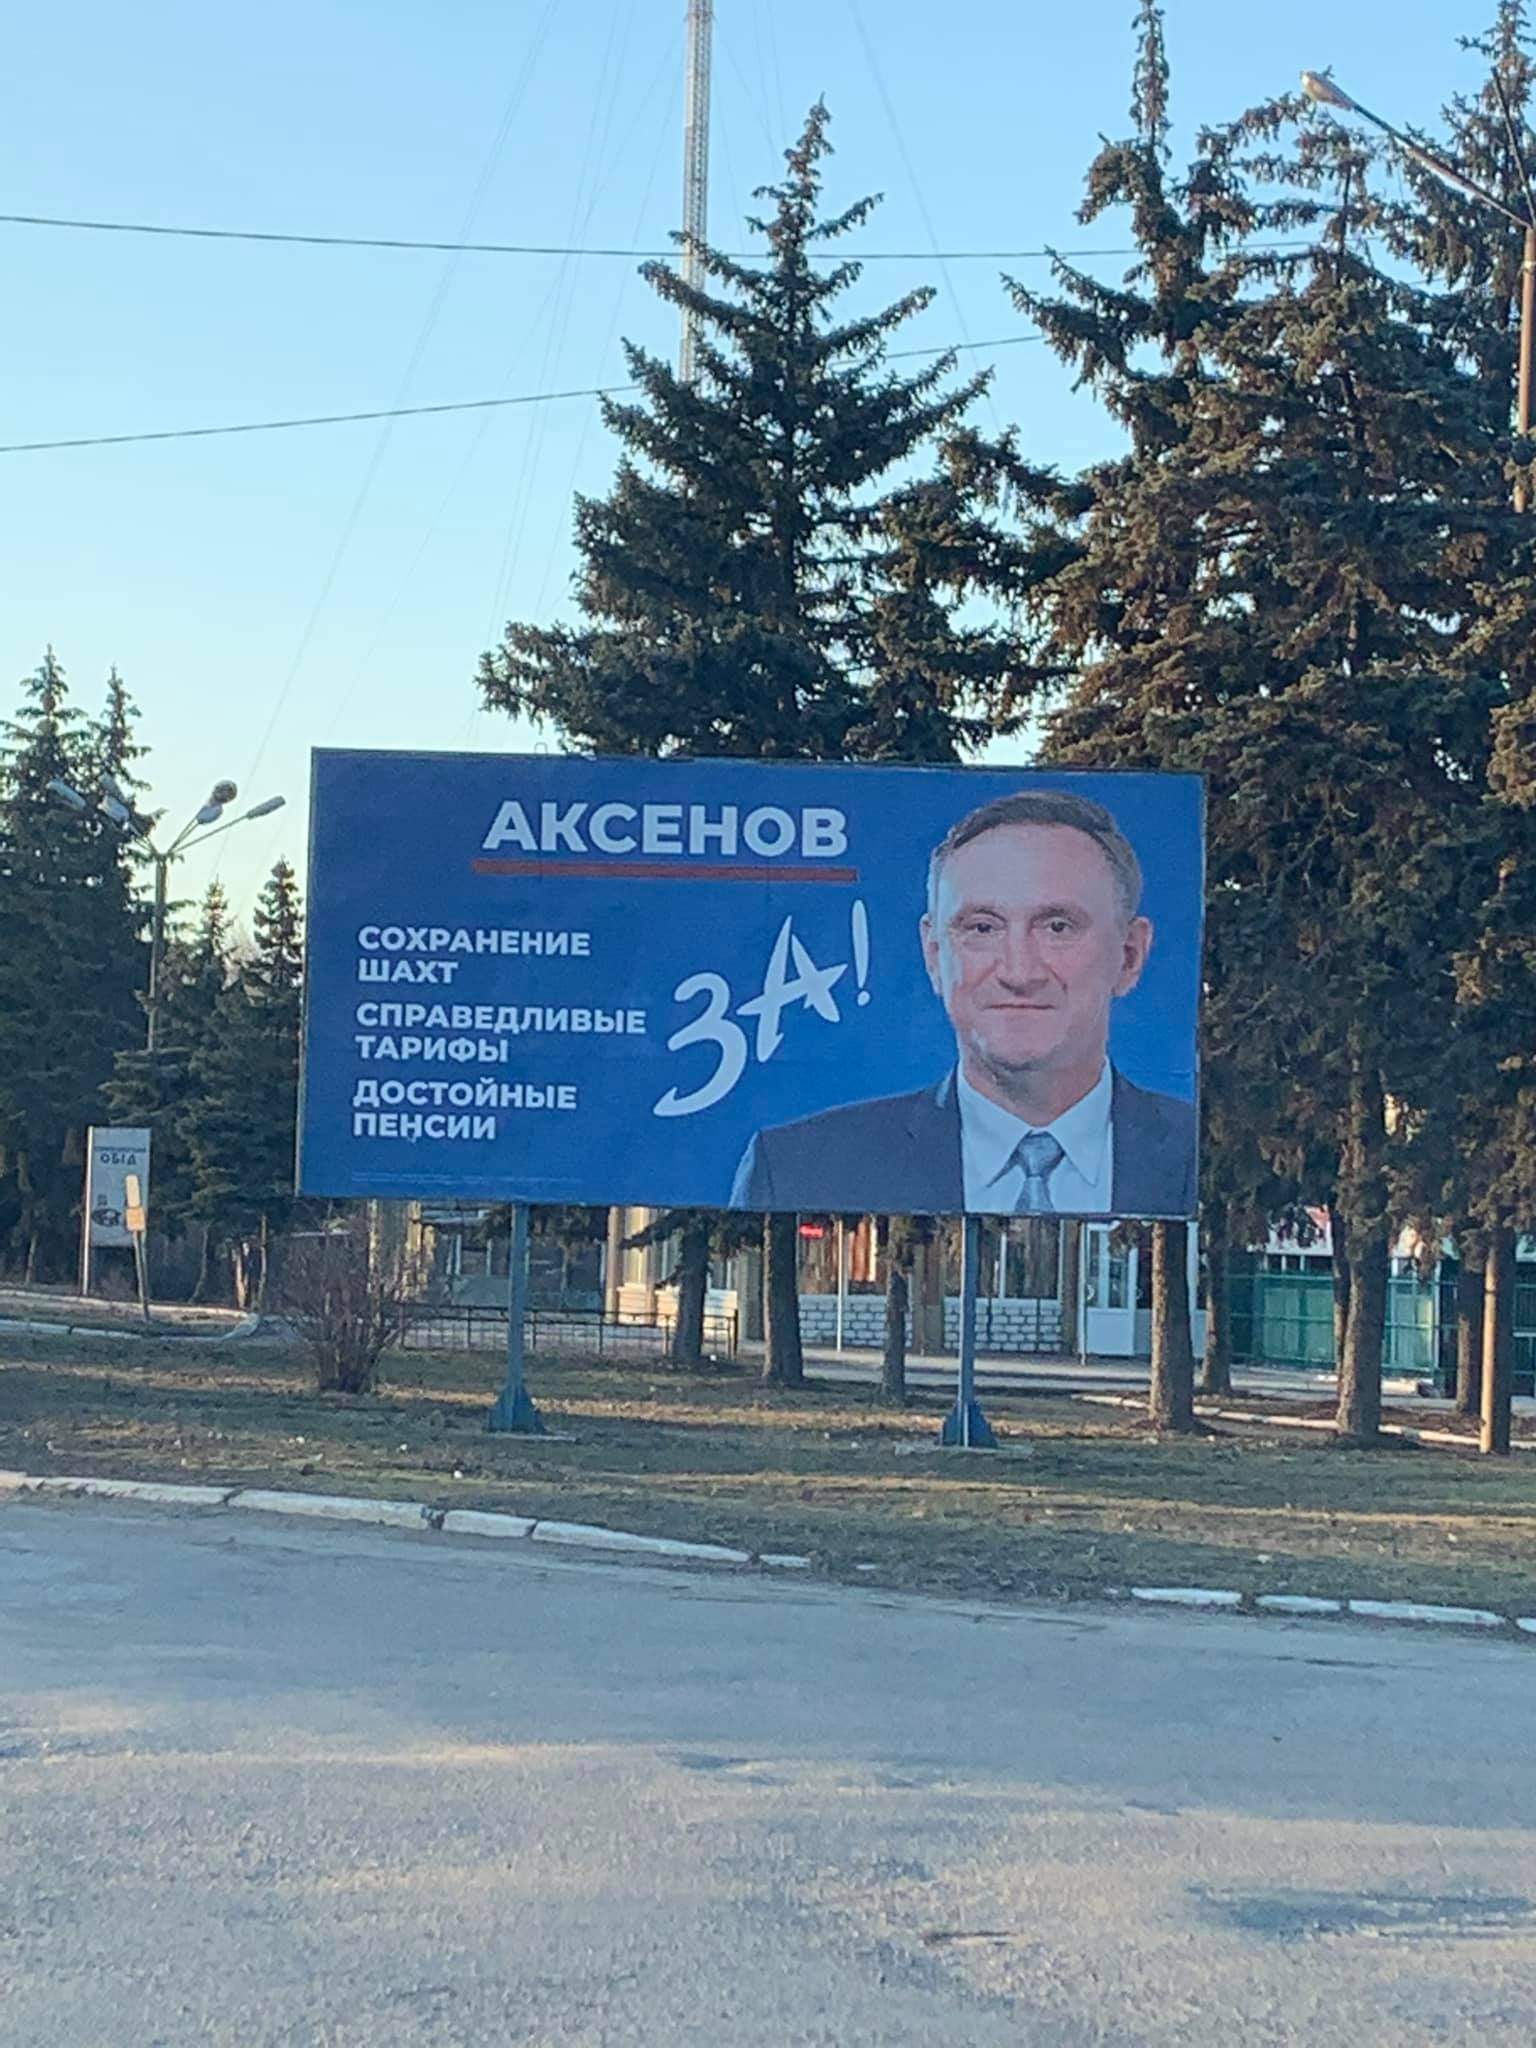  Борды по Аксенова русском языке в округе №50 во время промежуточных выборов